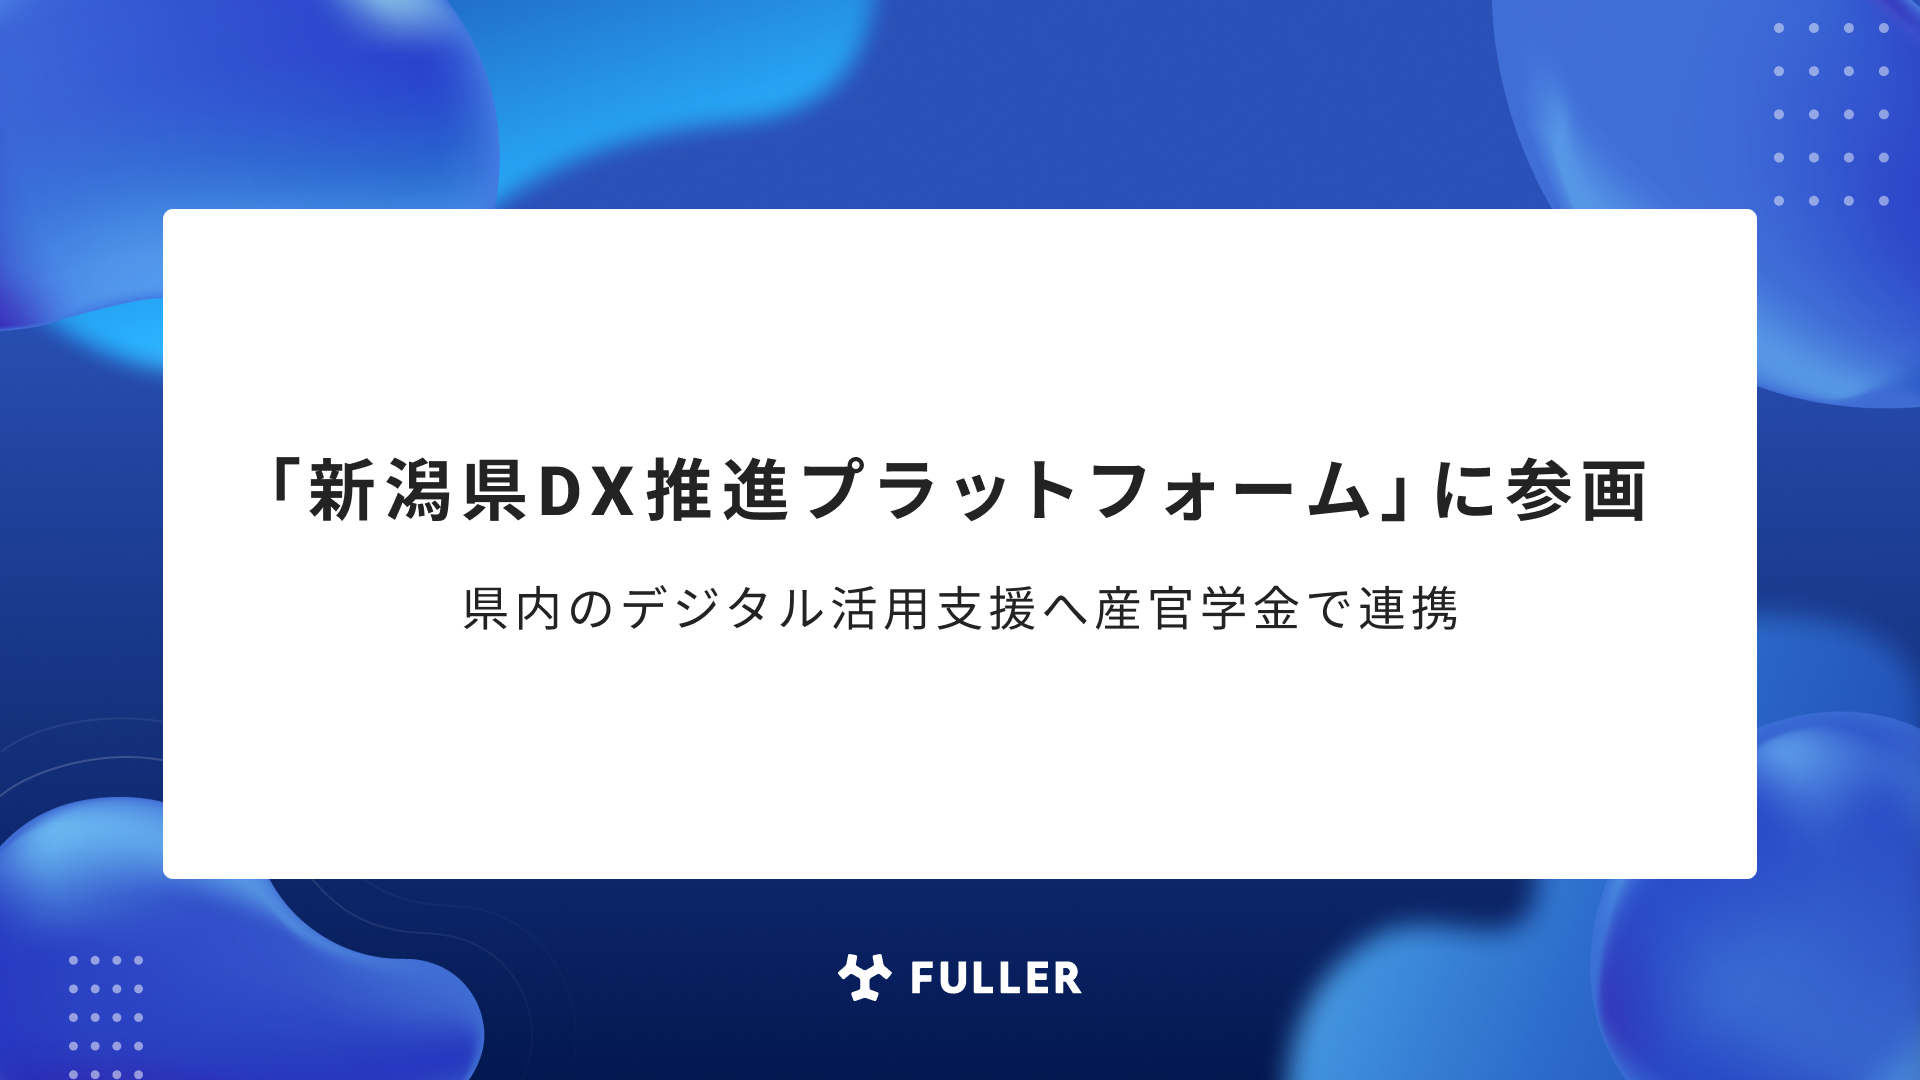 フラー、「新潟県DX推進プラットフォーム」に参画